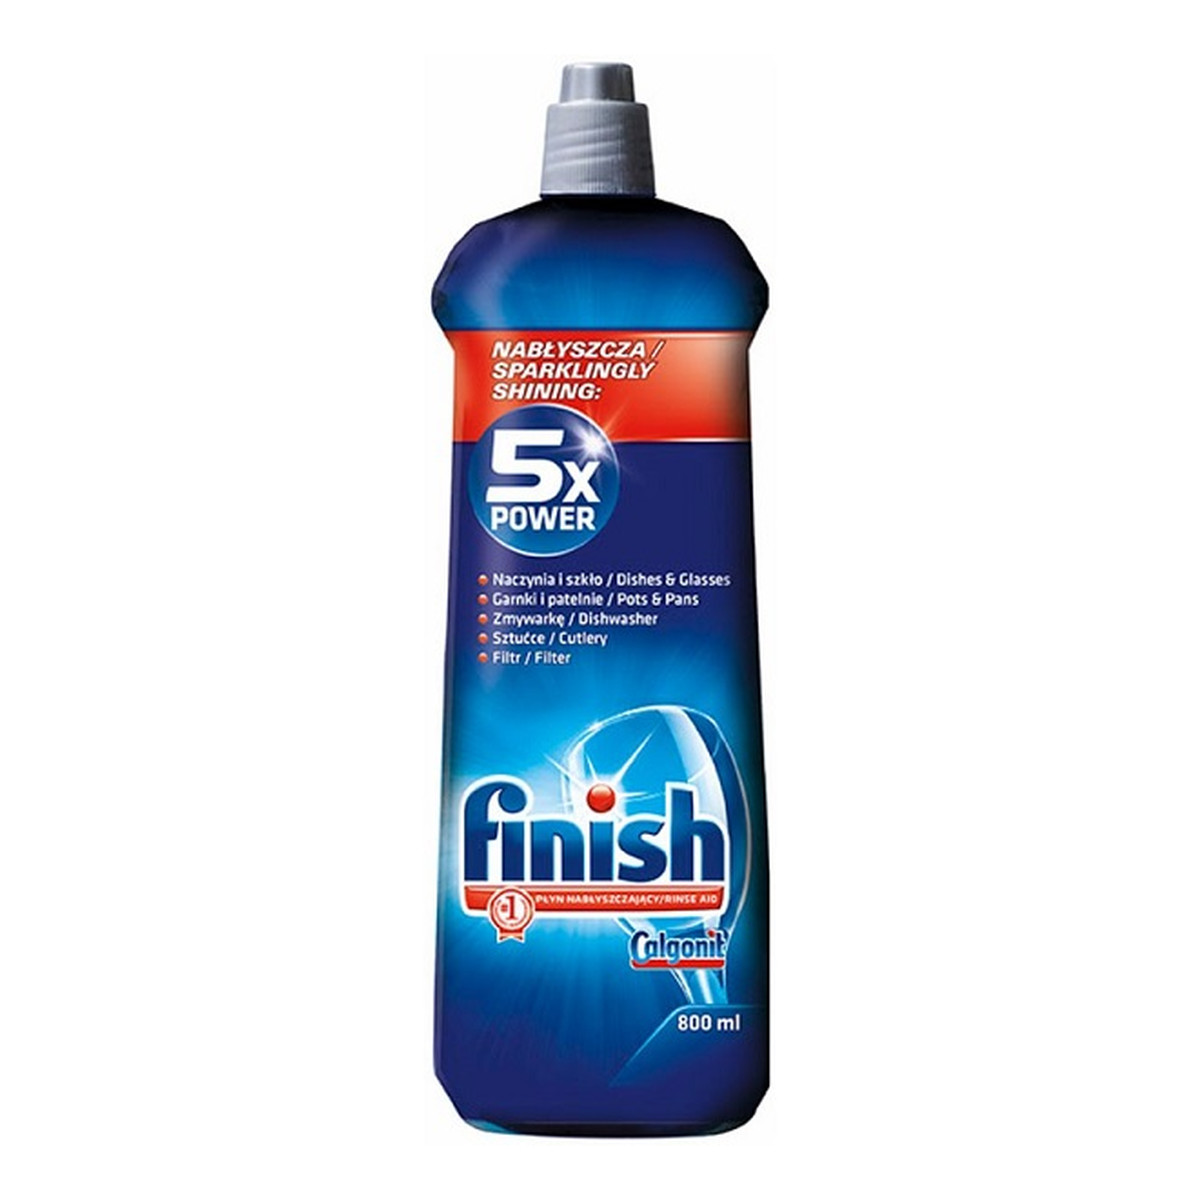 Finish 5x Power Actions Shine&Protect płyn nabłyszczający do zmywarek 800ml